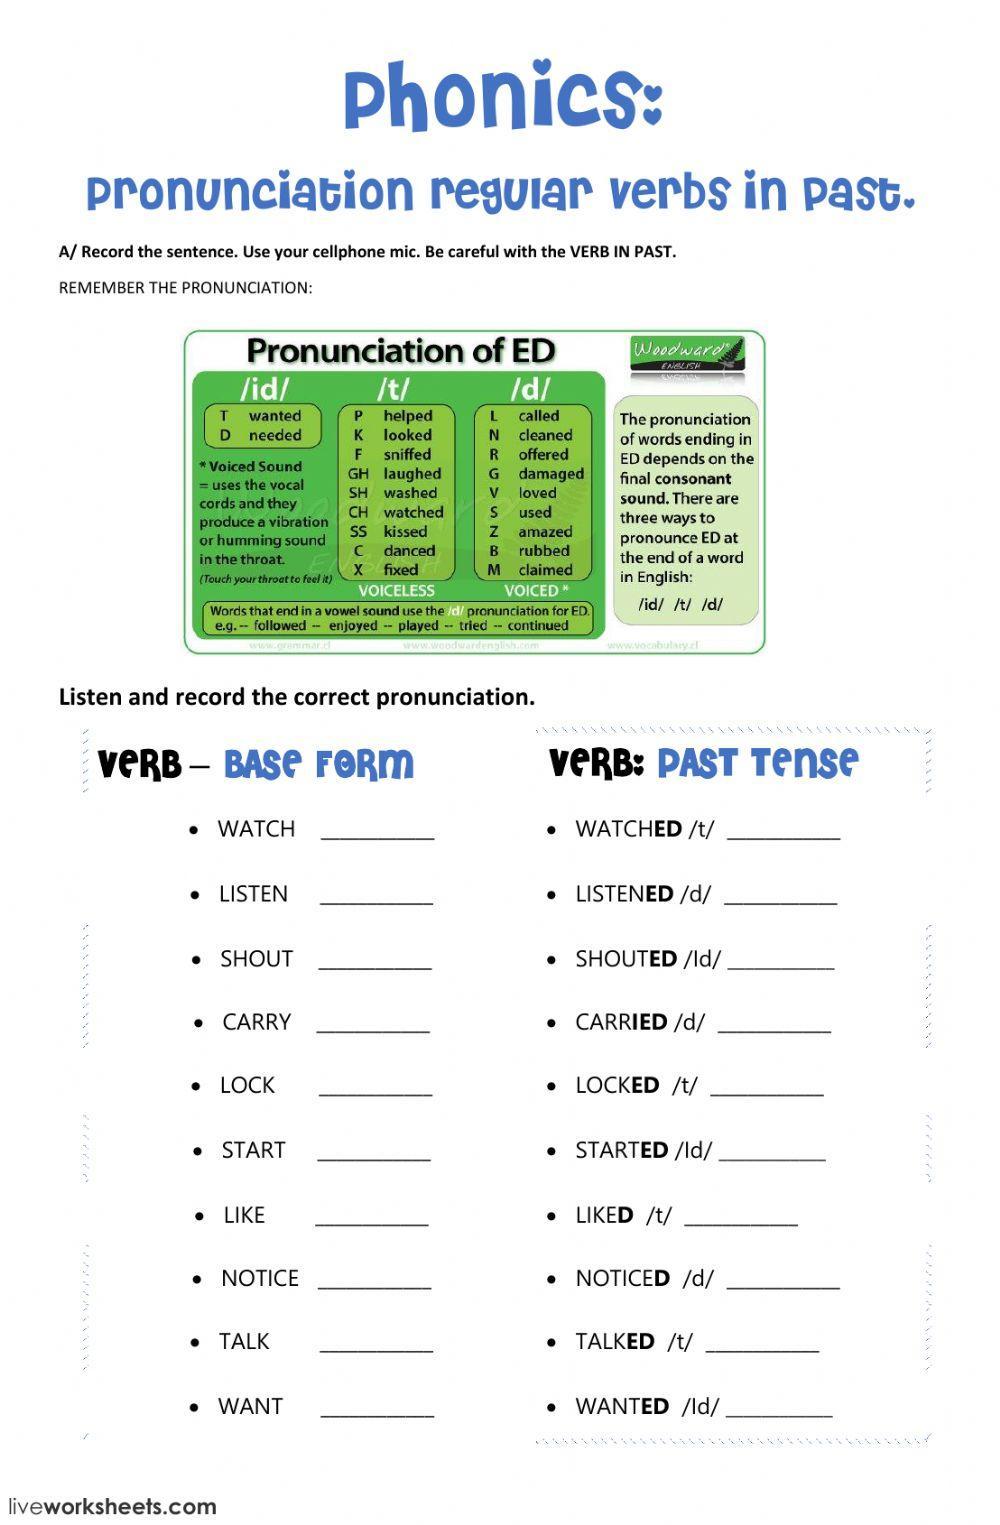 Pronunciation regular verbs in past - ed